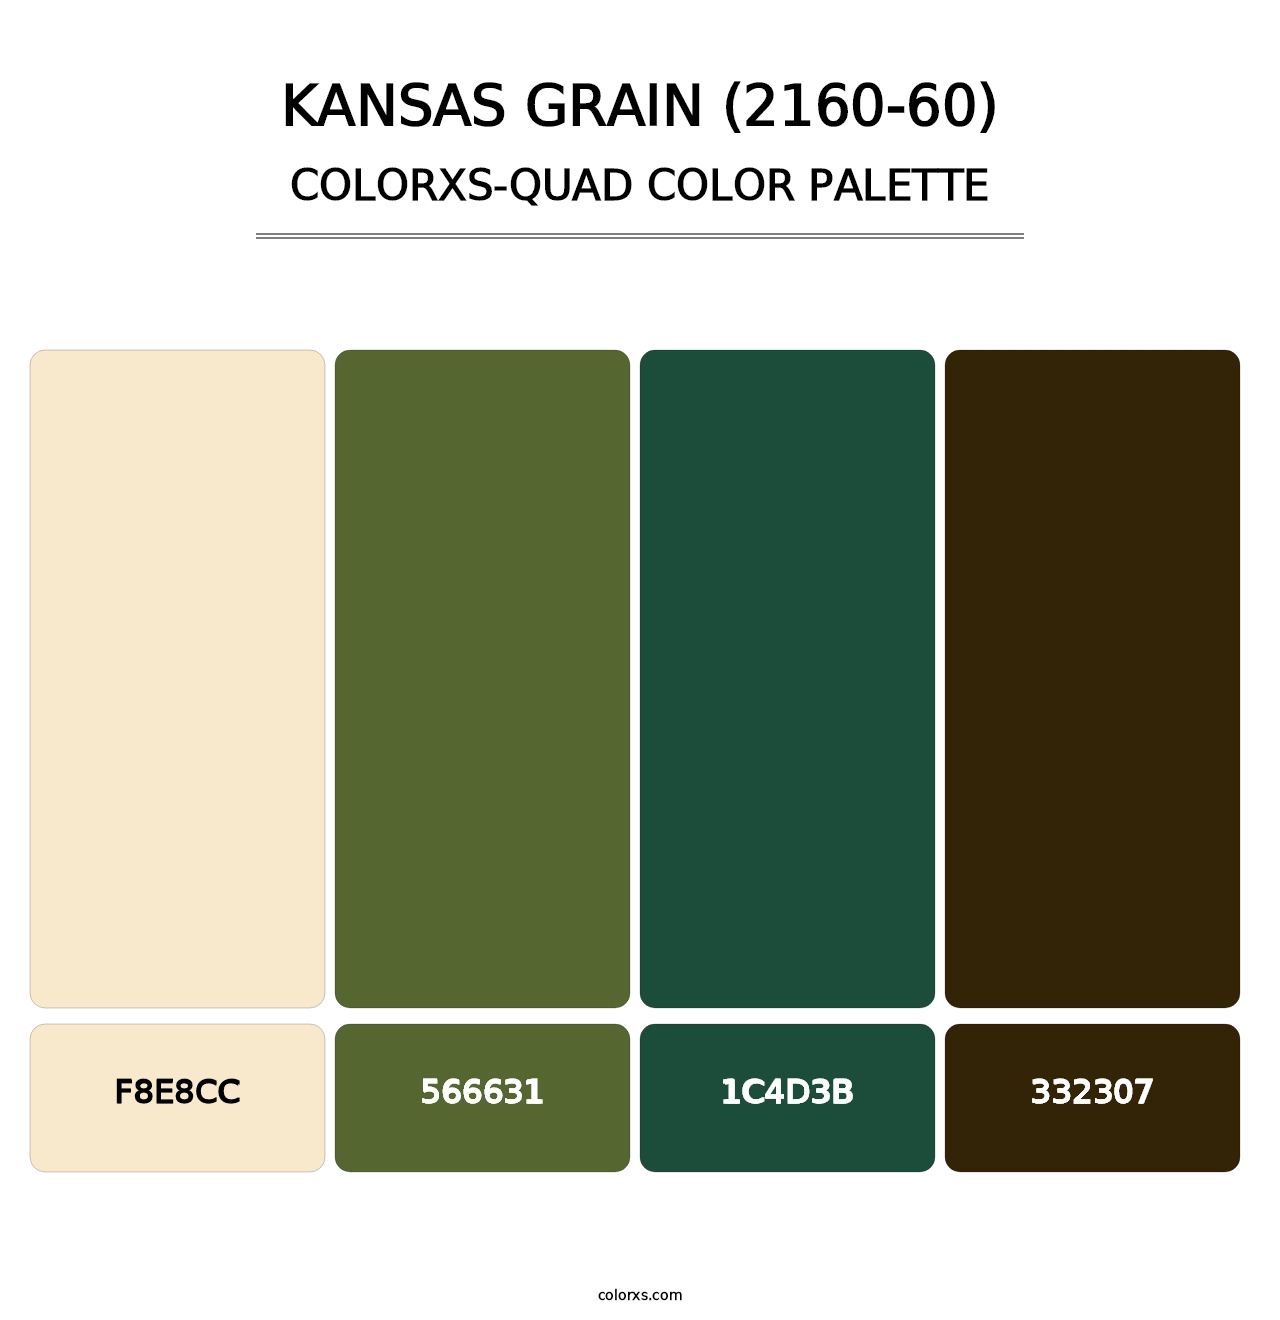 Kansas Grain (2160-60) - Colorxs Quad Palette